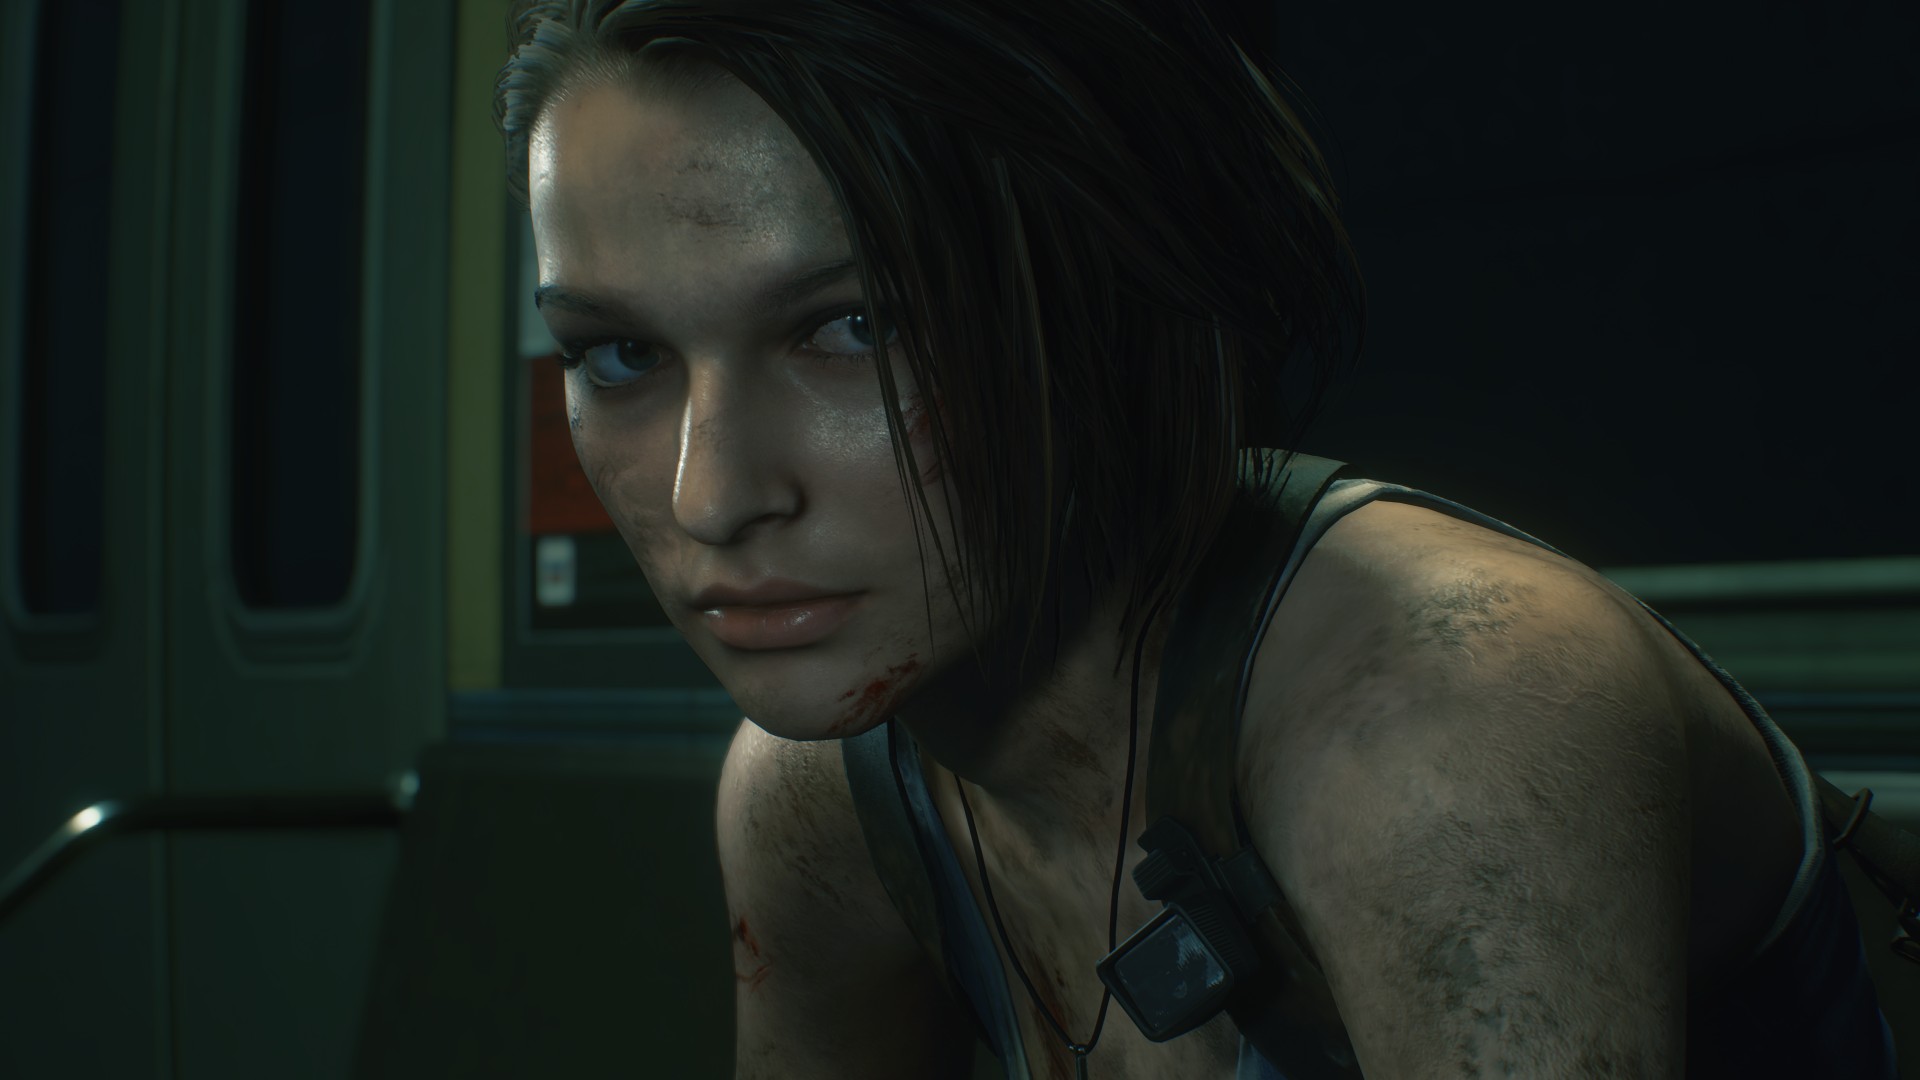 Immagine pubblicata in relazione al seguente contenuto: Il volto della modella Sasha Zotova per Jill Valentine in Resident Evil 3 | Nome immagine: news30295_Resident-Evil-3-Sasha-Zotova_1.jpg